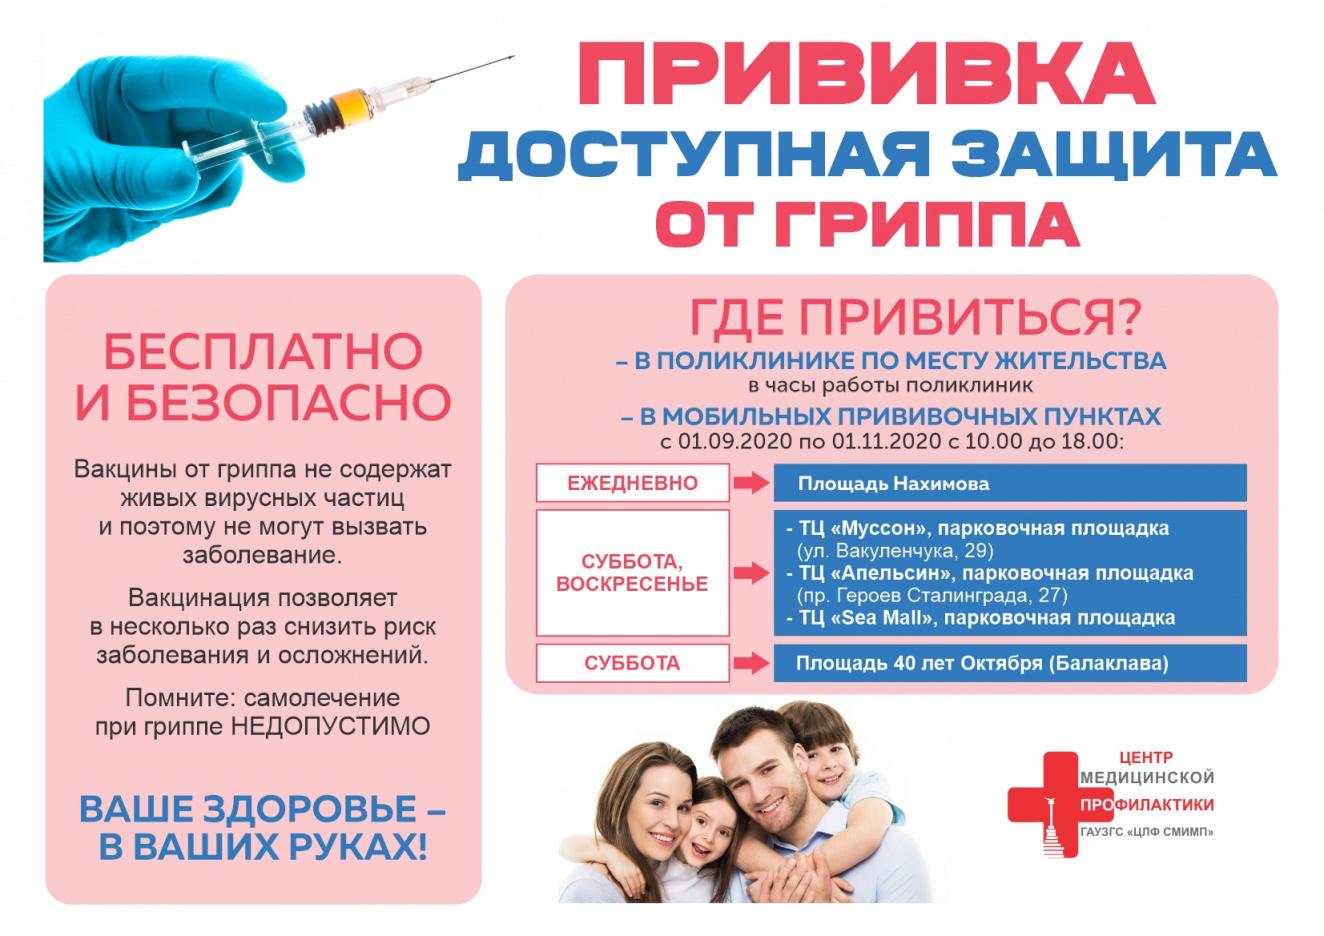 Прививка доступная защита от ГРИППА.jpg